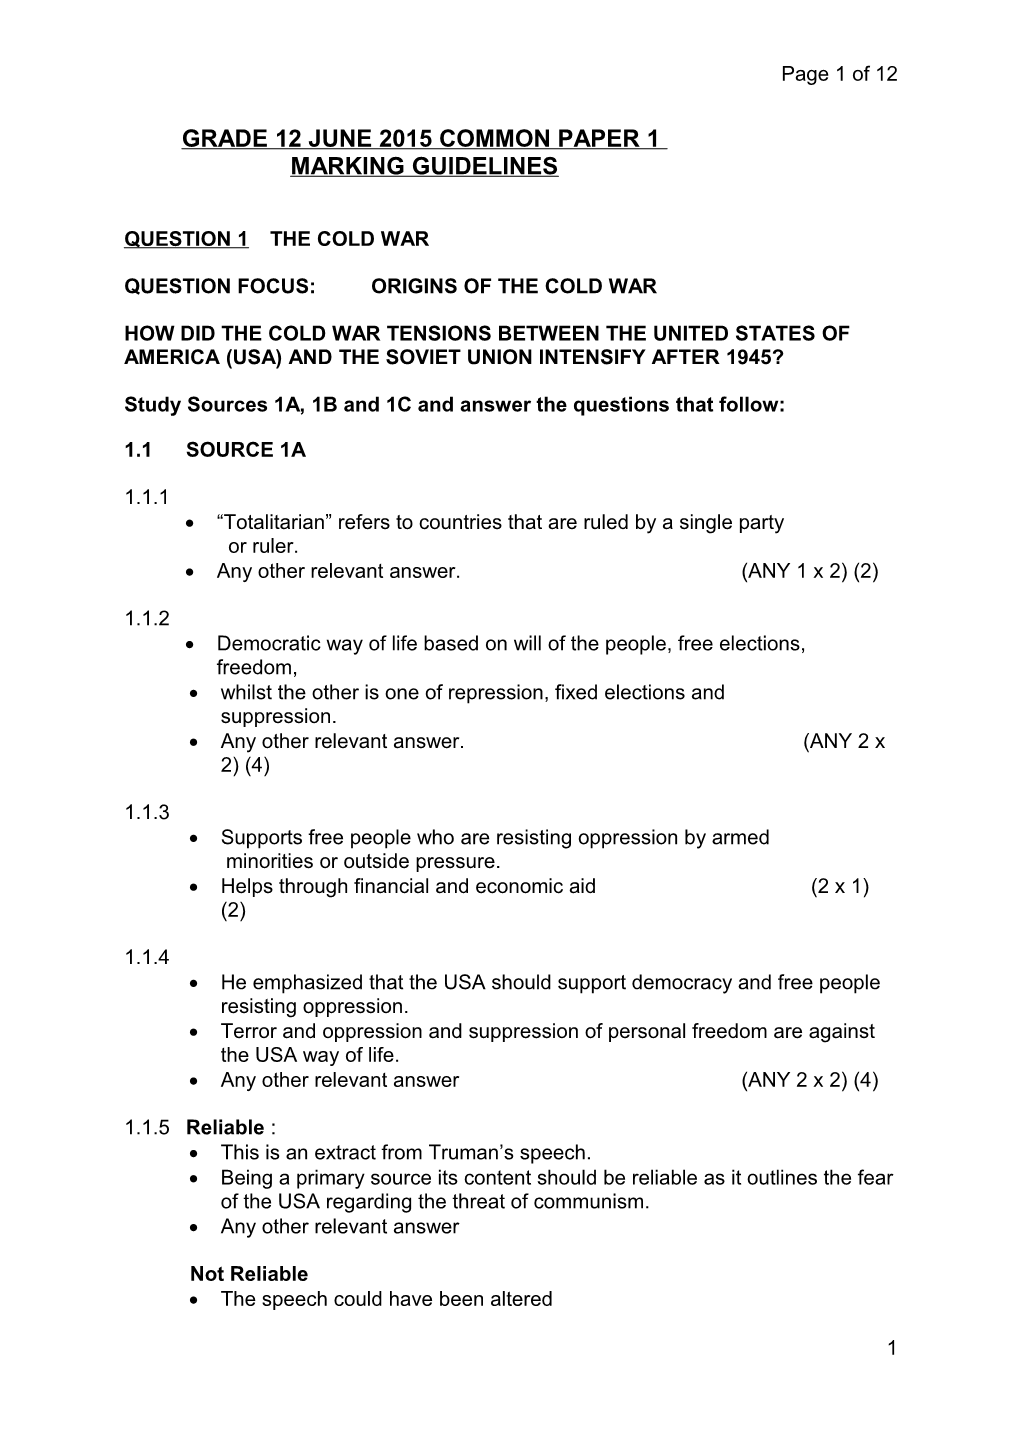 Grade 12 June 2015 Common Paper 1